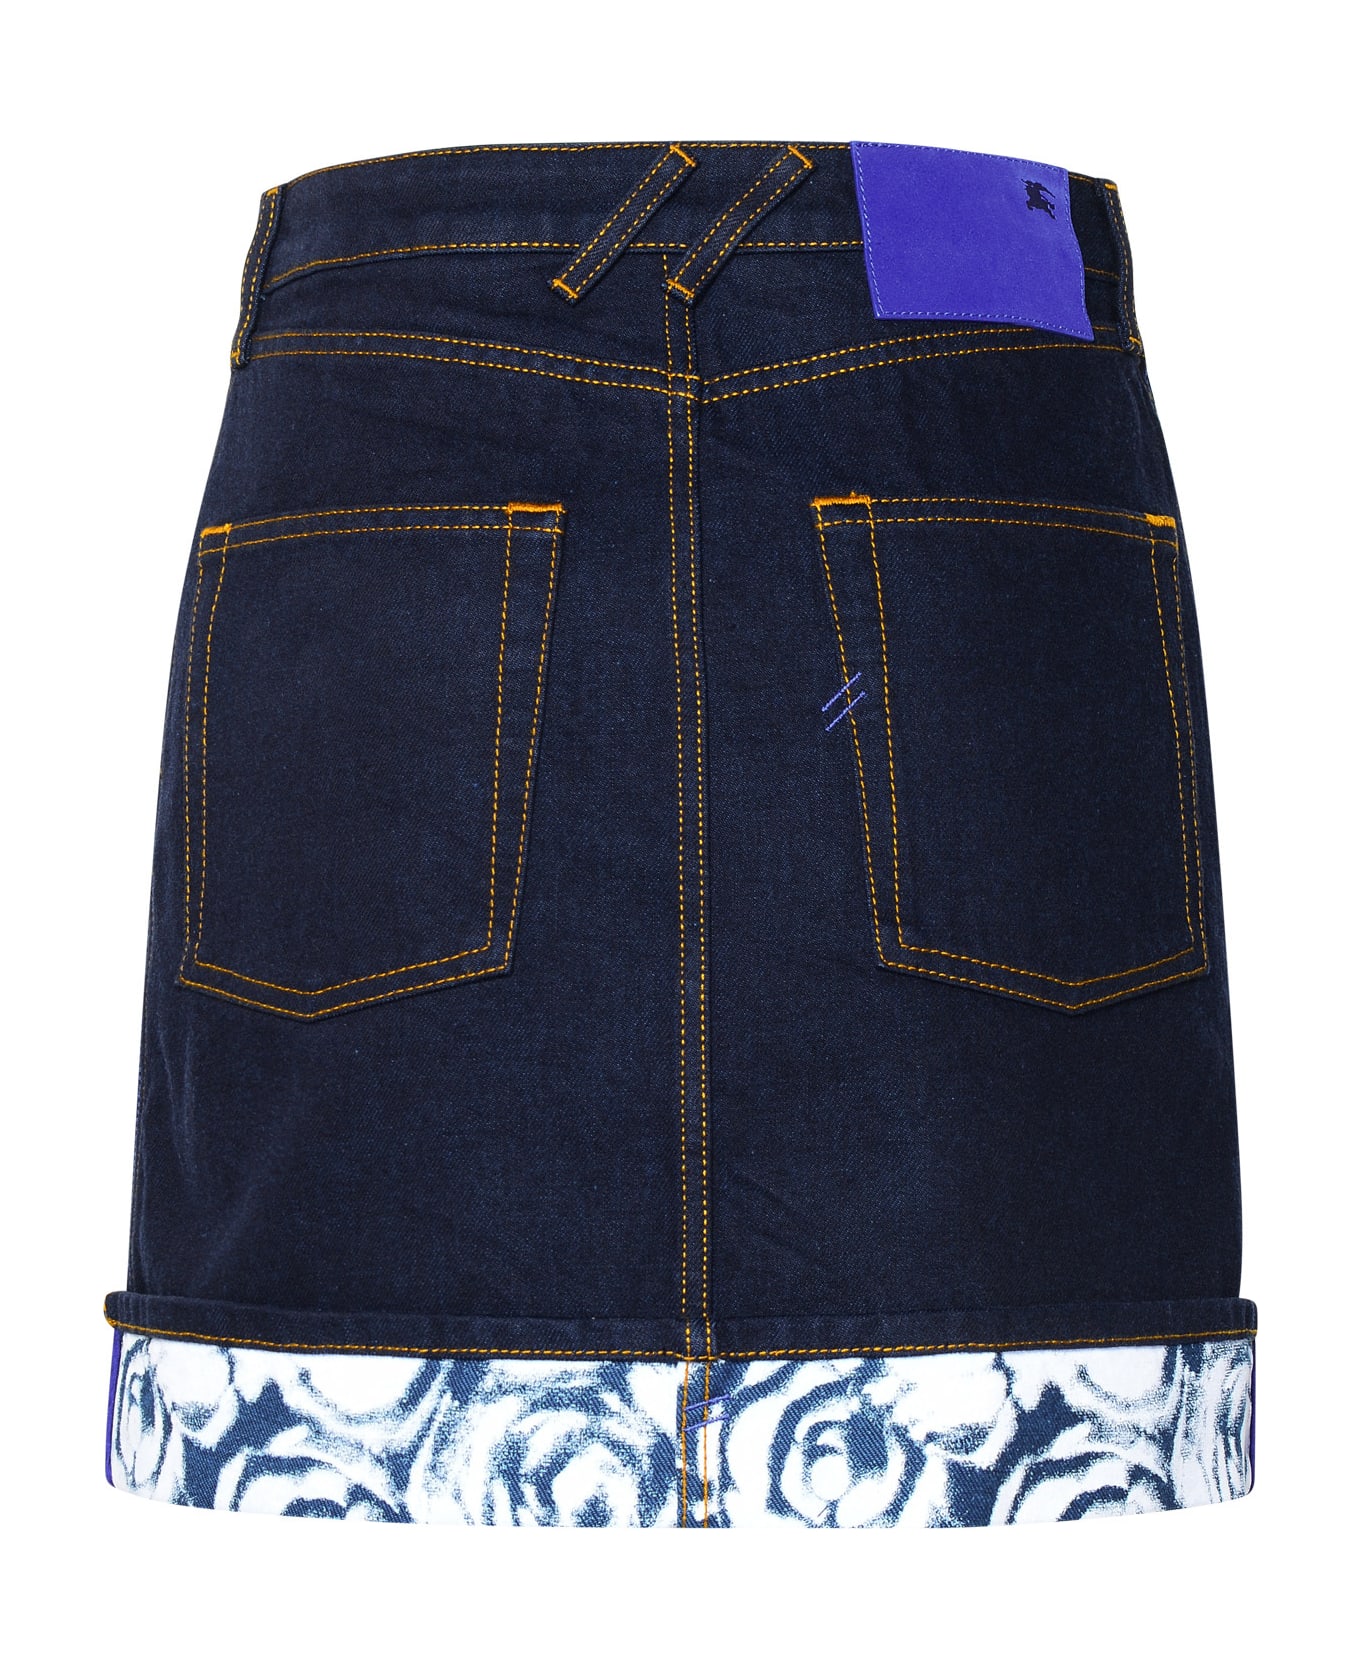 Burberry Indigo Blue Cotton Miniskirt - Blue スカート